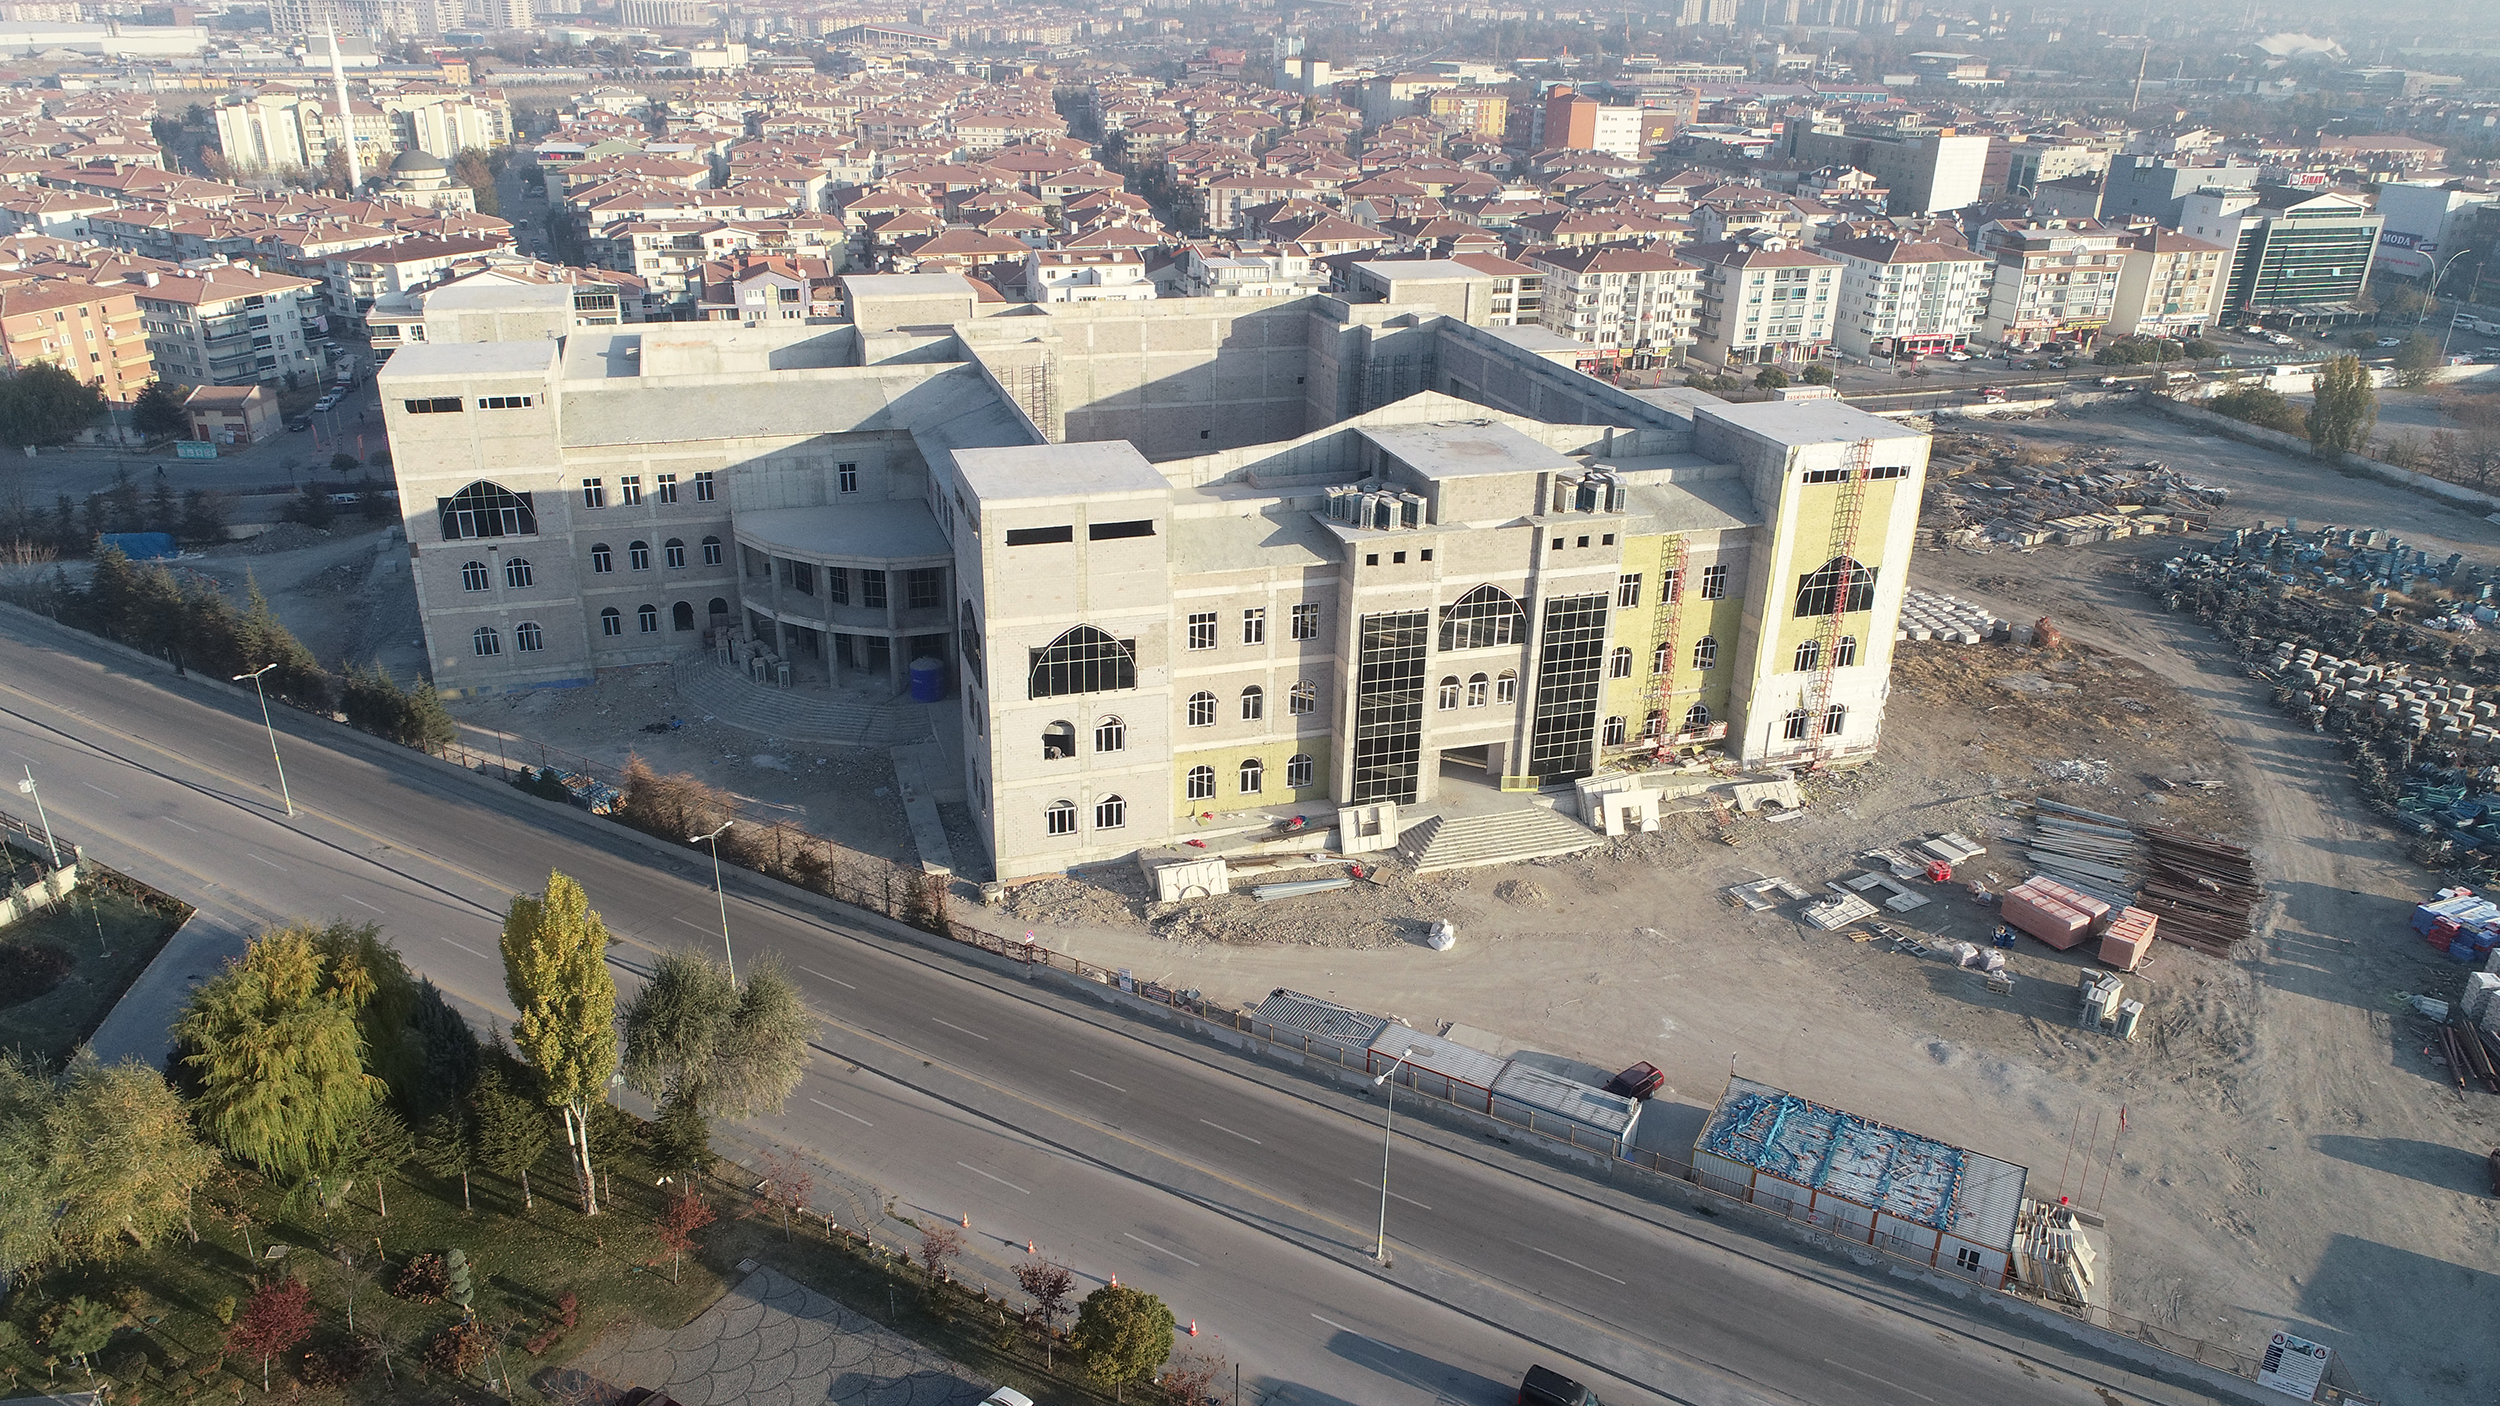  Sincan’da Ankara’nın En Büyük Kongre ve Kültür Merkezi Açılıyor